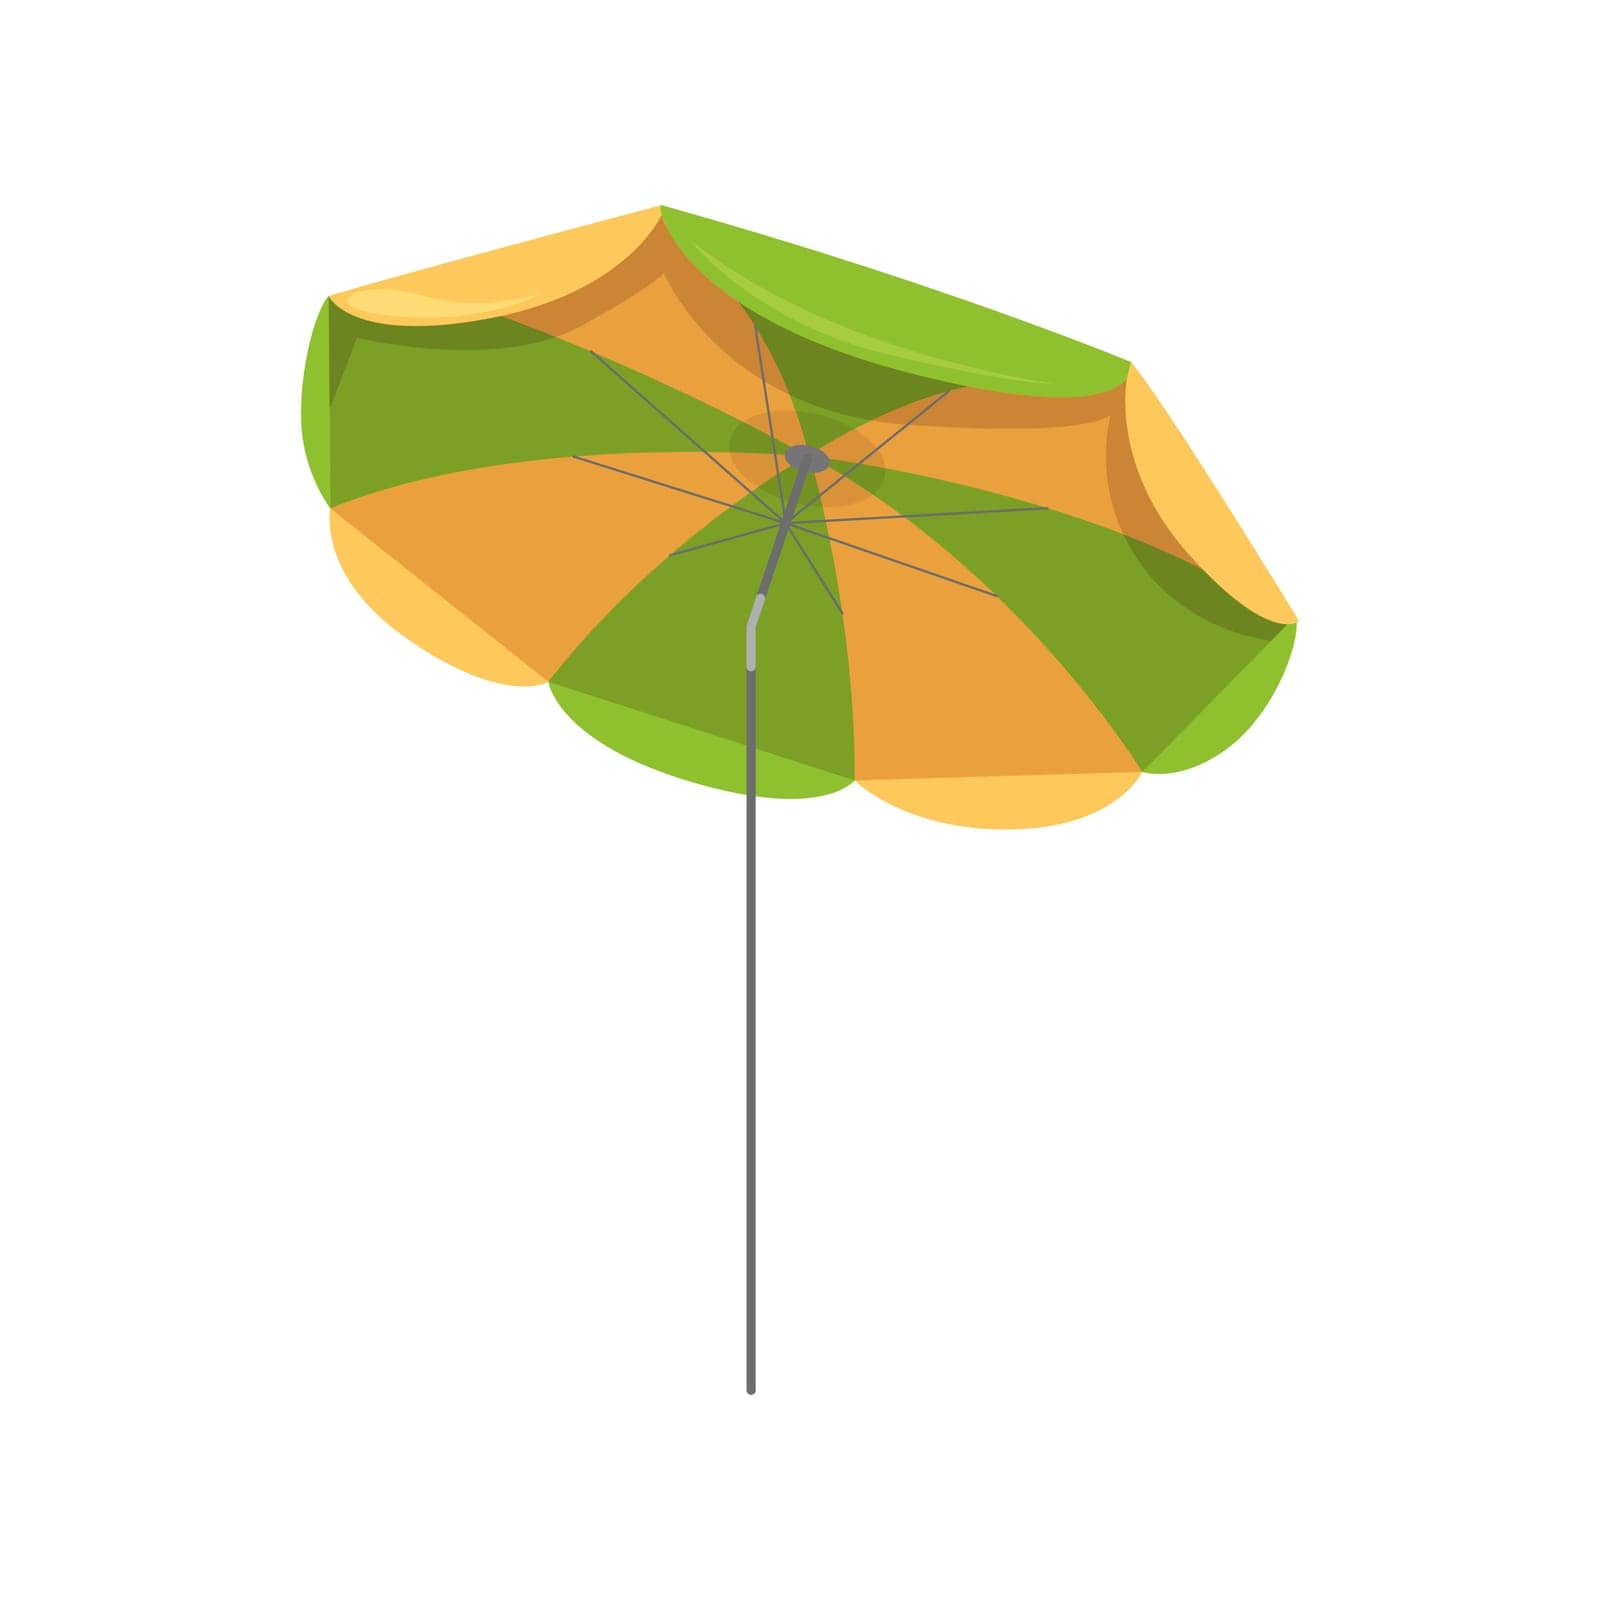 Sea holiday umbrella by Popov